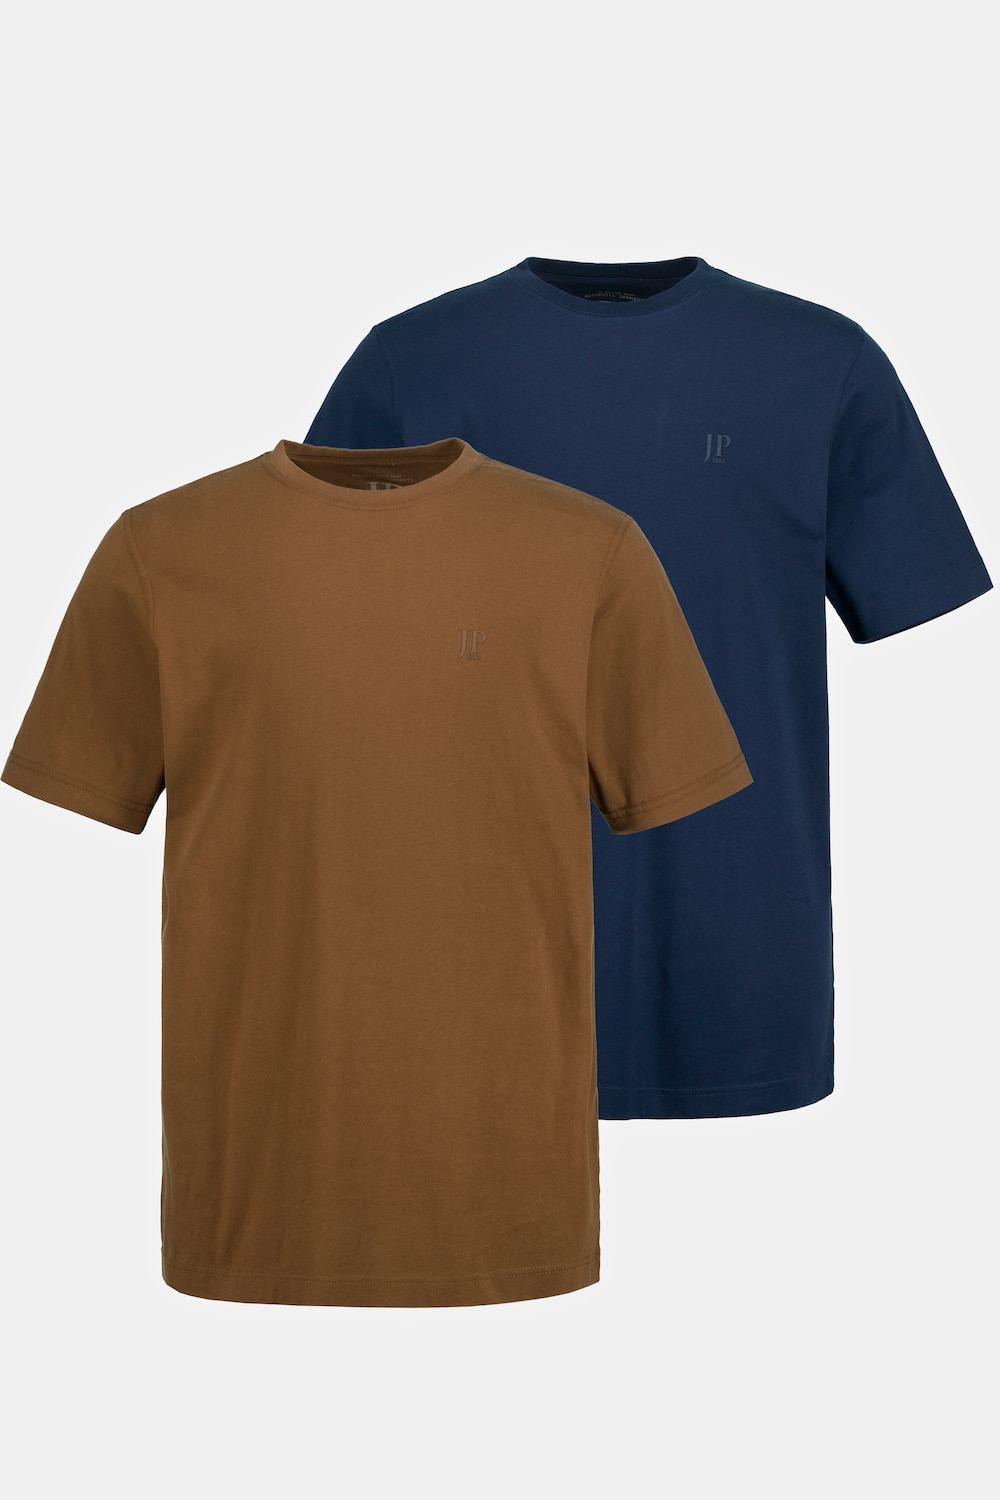 Grote Maten T-shirts, Heren, bruin, Maat: 6XL, Katoen, JP1880